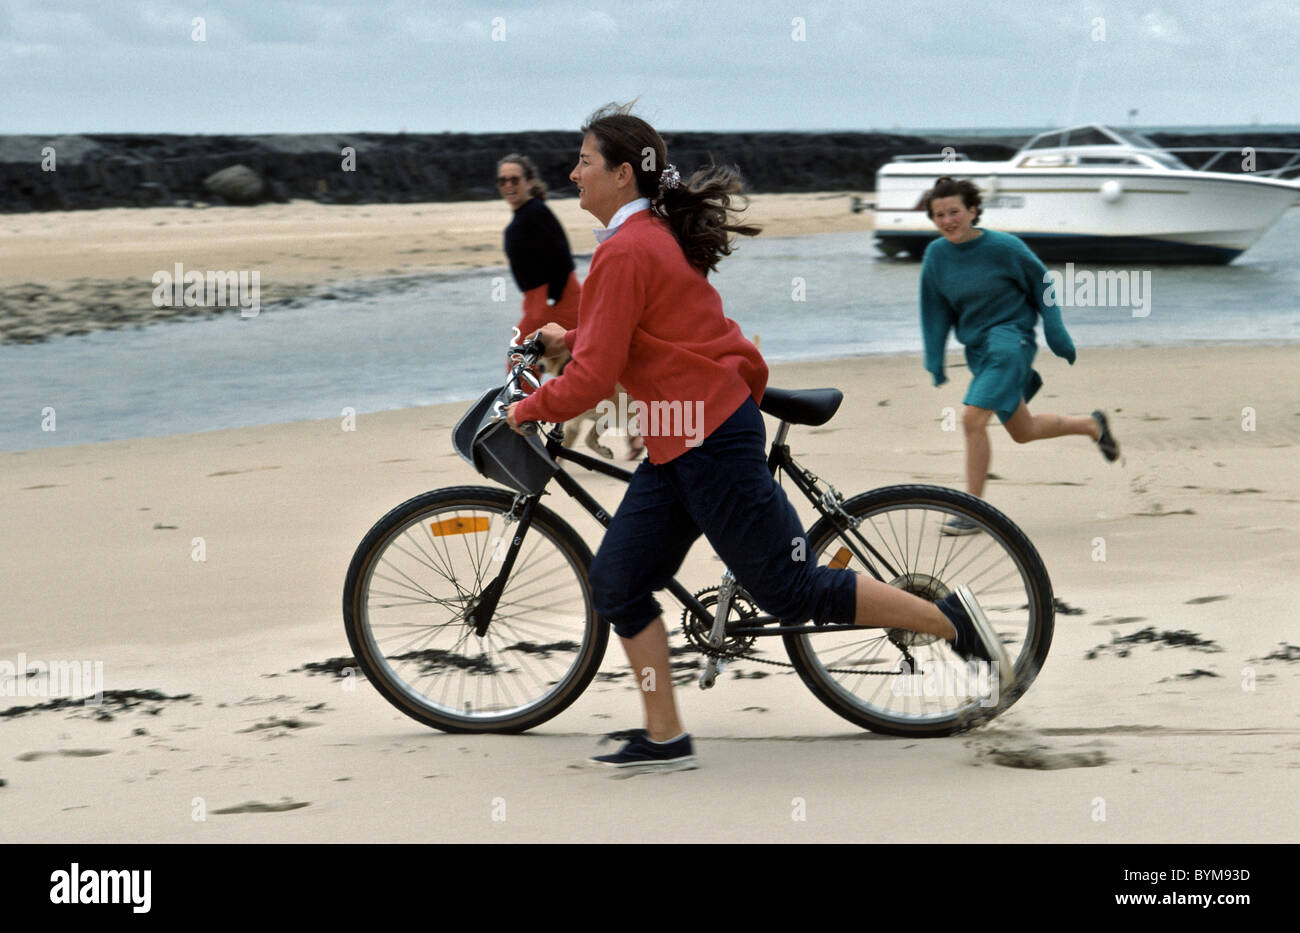 Spiaggia in scena con la donna in esecuzione con la sua mountain bike e due persone seguono in background Foto Stock